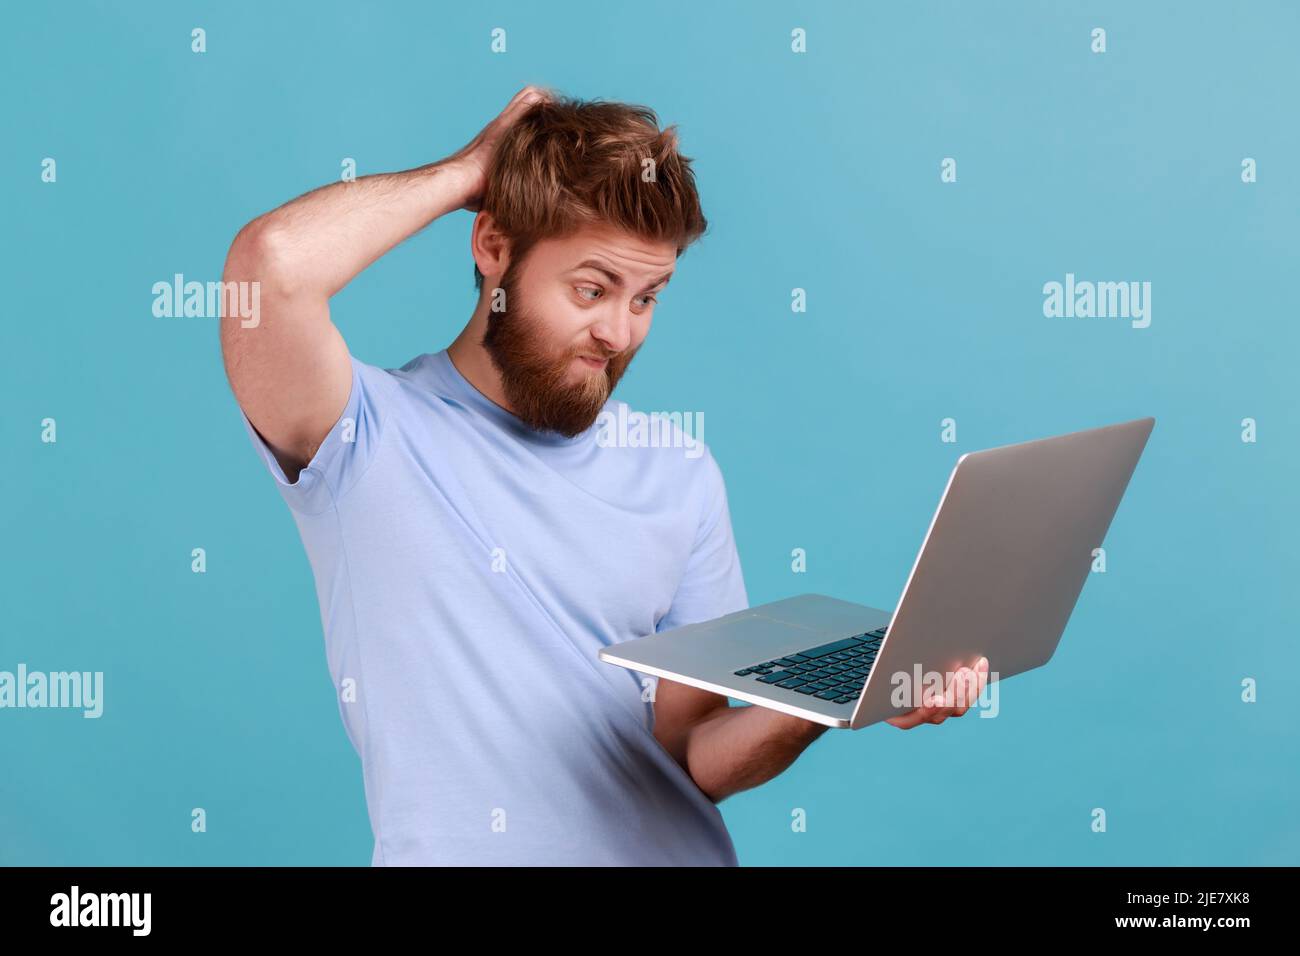 Porträt eines nachdenklichen bärtigen Mannes, der auf dem Laptop steht und tippt, eine neue Idee hat und eine eigene Strategie plant, wobei er eine Hand auf den Kopf hält. Innenaufnahme des Studios isoliert auf blauem Hintergrund. Stockfoto